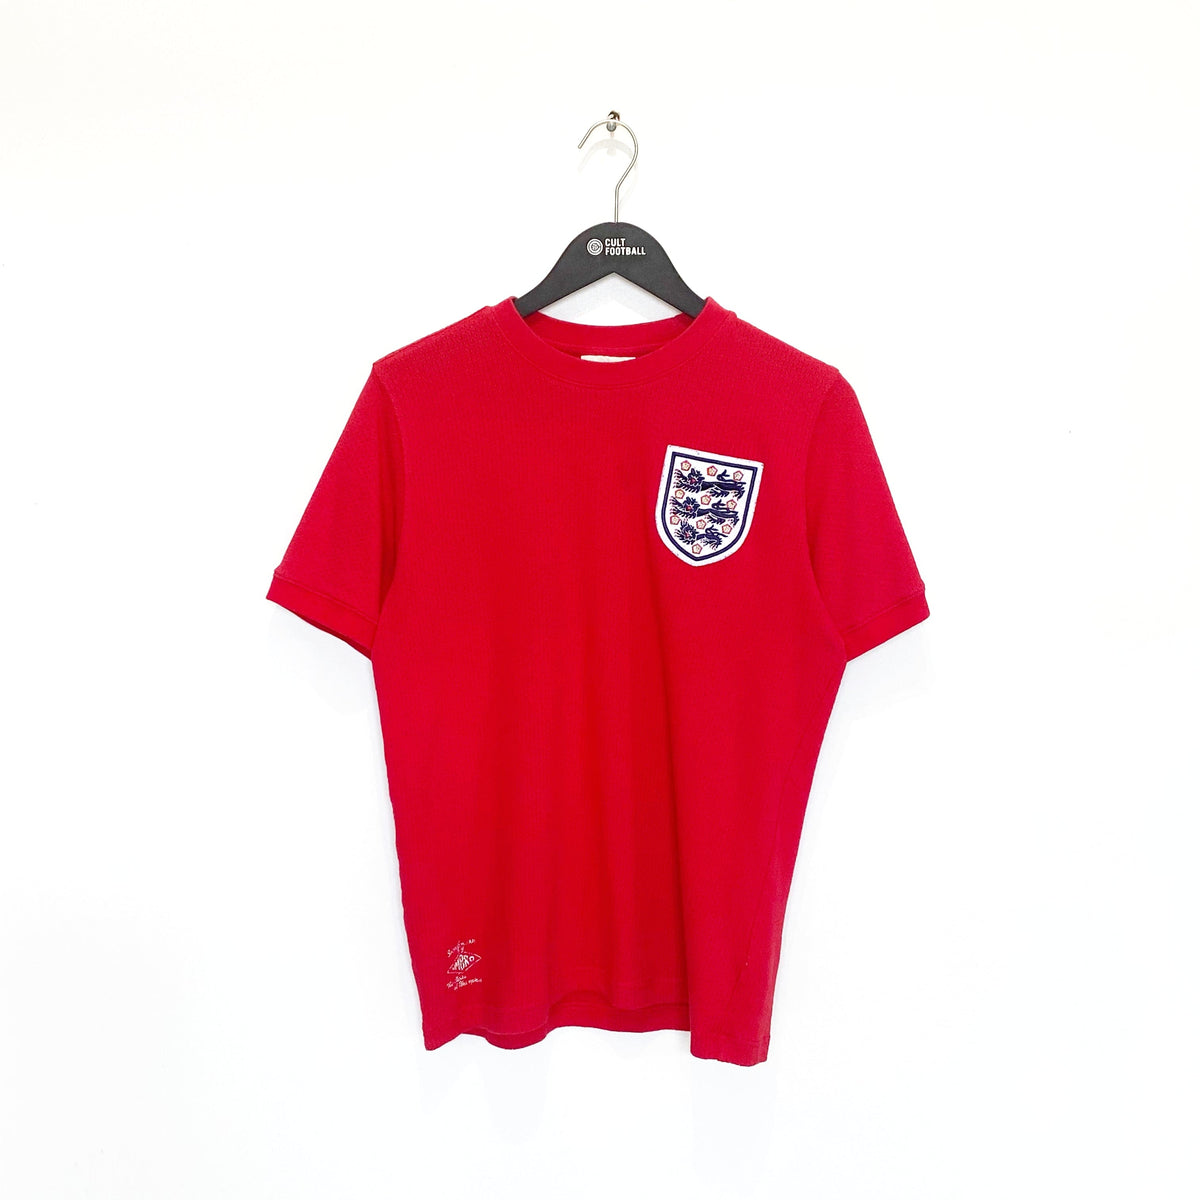 Vintage England - Shirt Collective